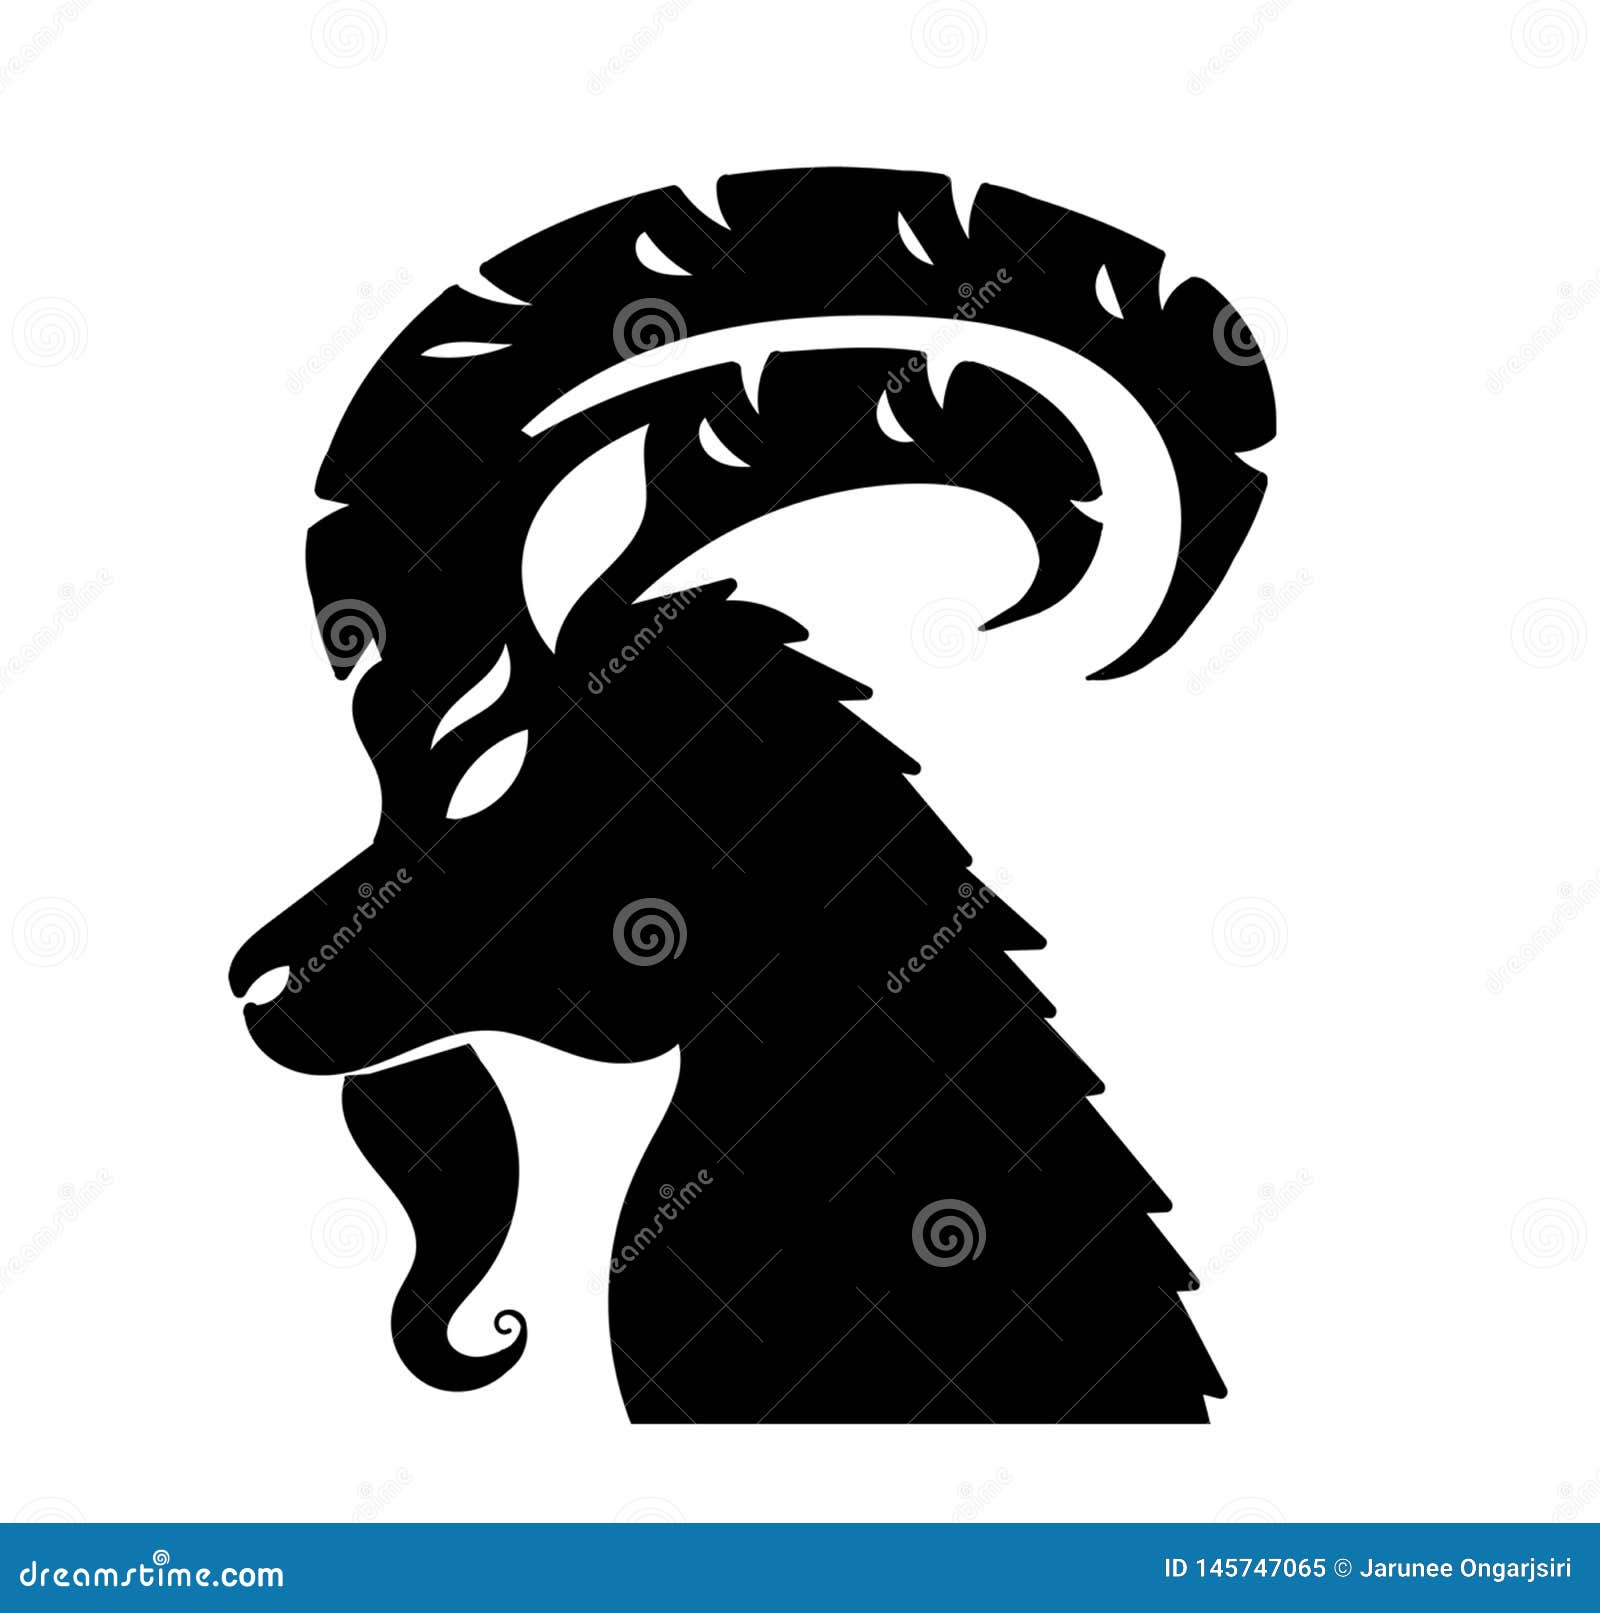 Mountain Goat Capricorn Animal Horoscope Art Astrology Smybol Wallpaper  Stock Illustration - Illustration of color, black: 145747065